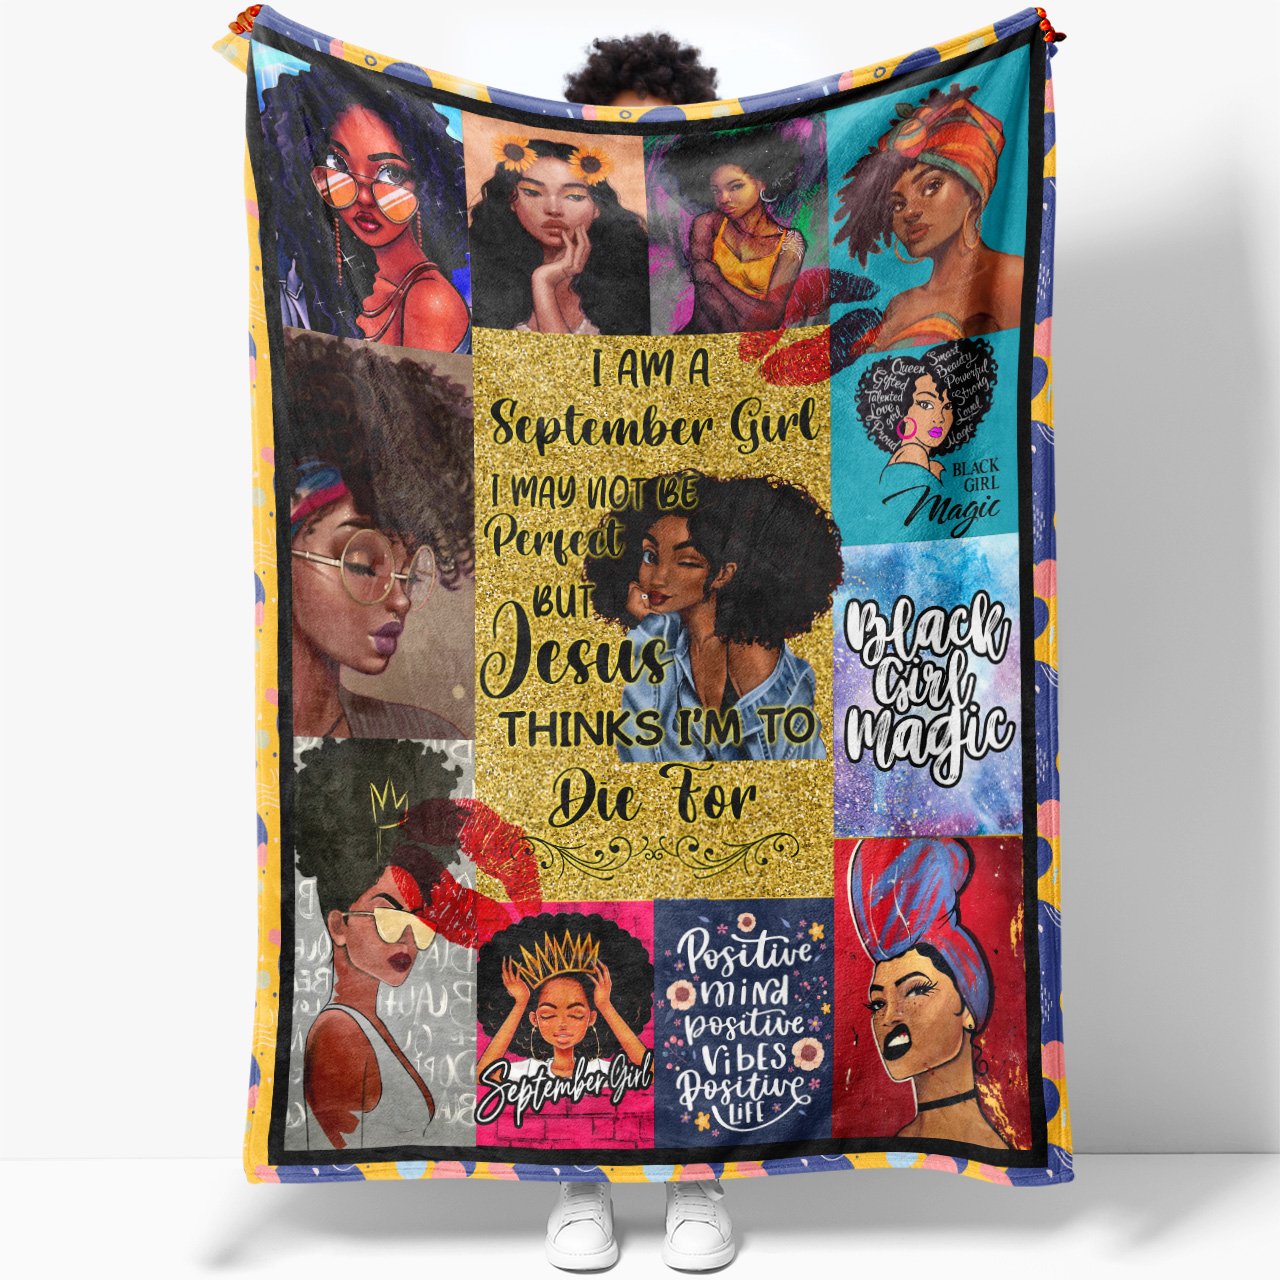 Blanket Birthday Gift Ideas For September Black Girl, Black Girl Magic, Not Be Perfect But Jesus Thinks I'm to Blanket for Black Daughter